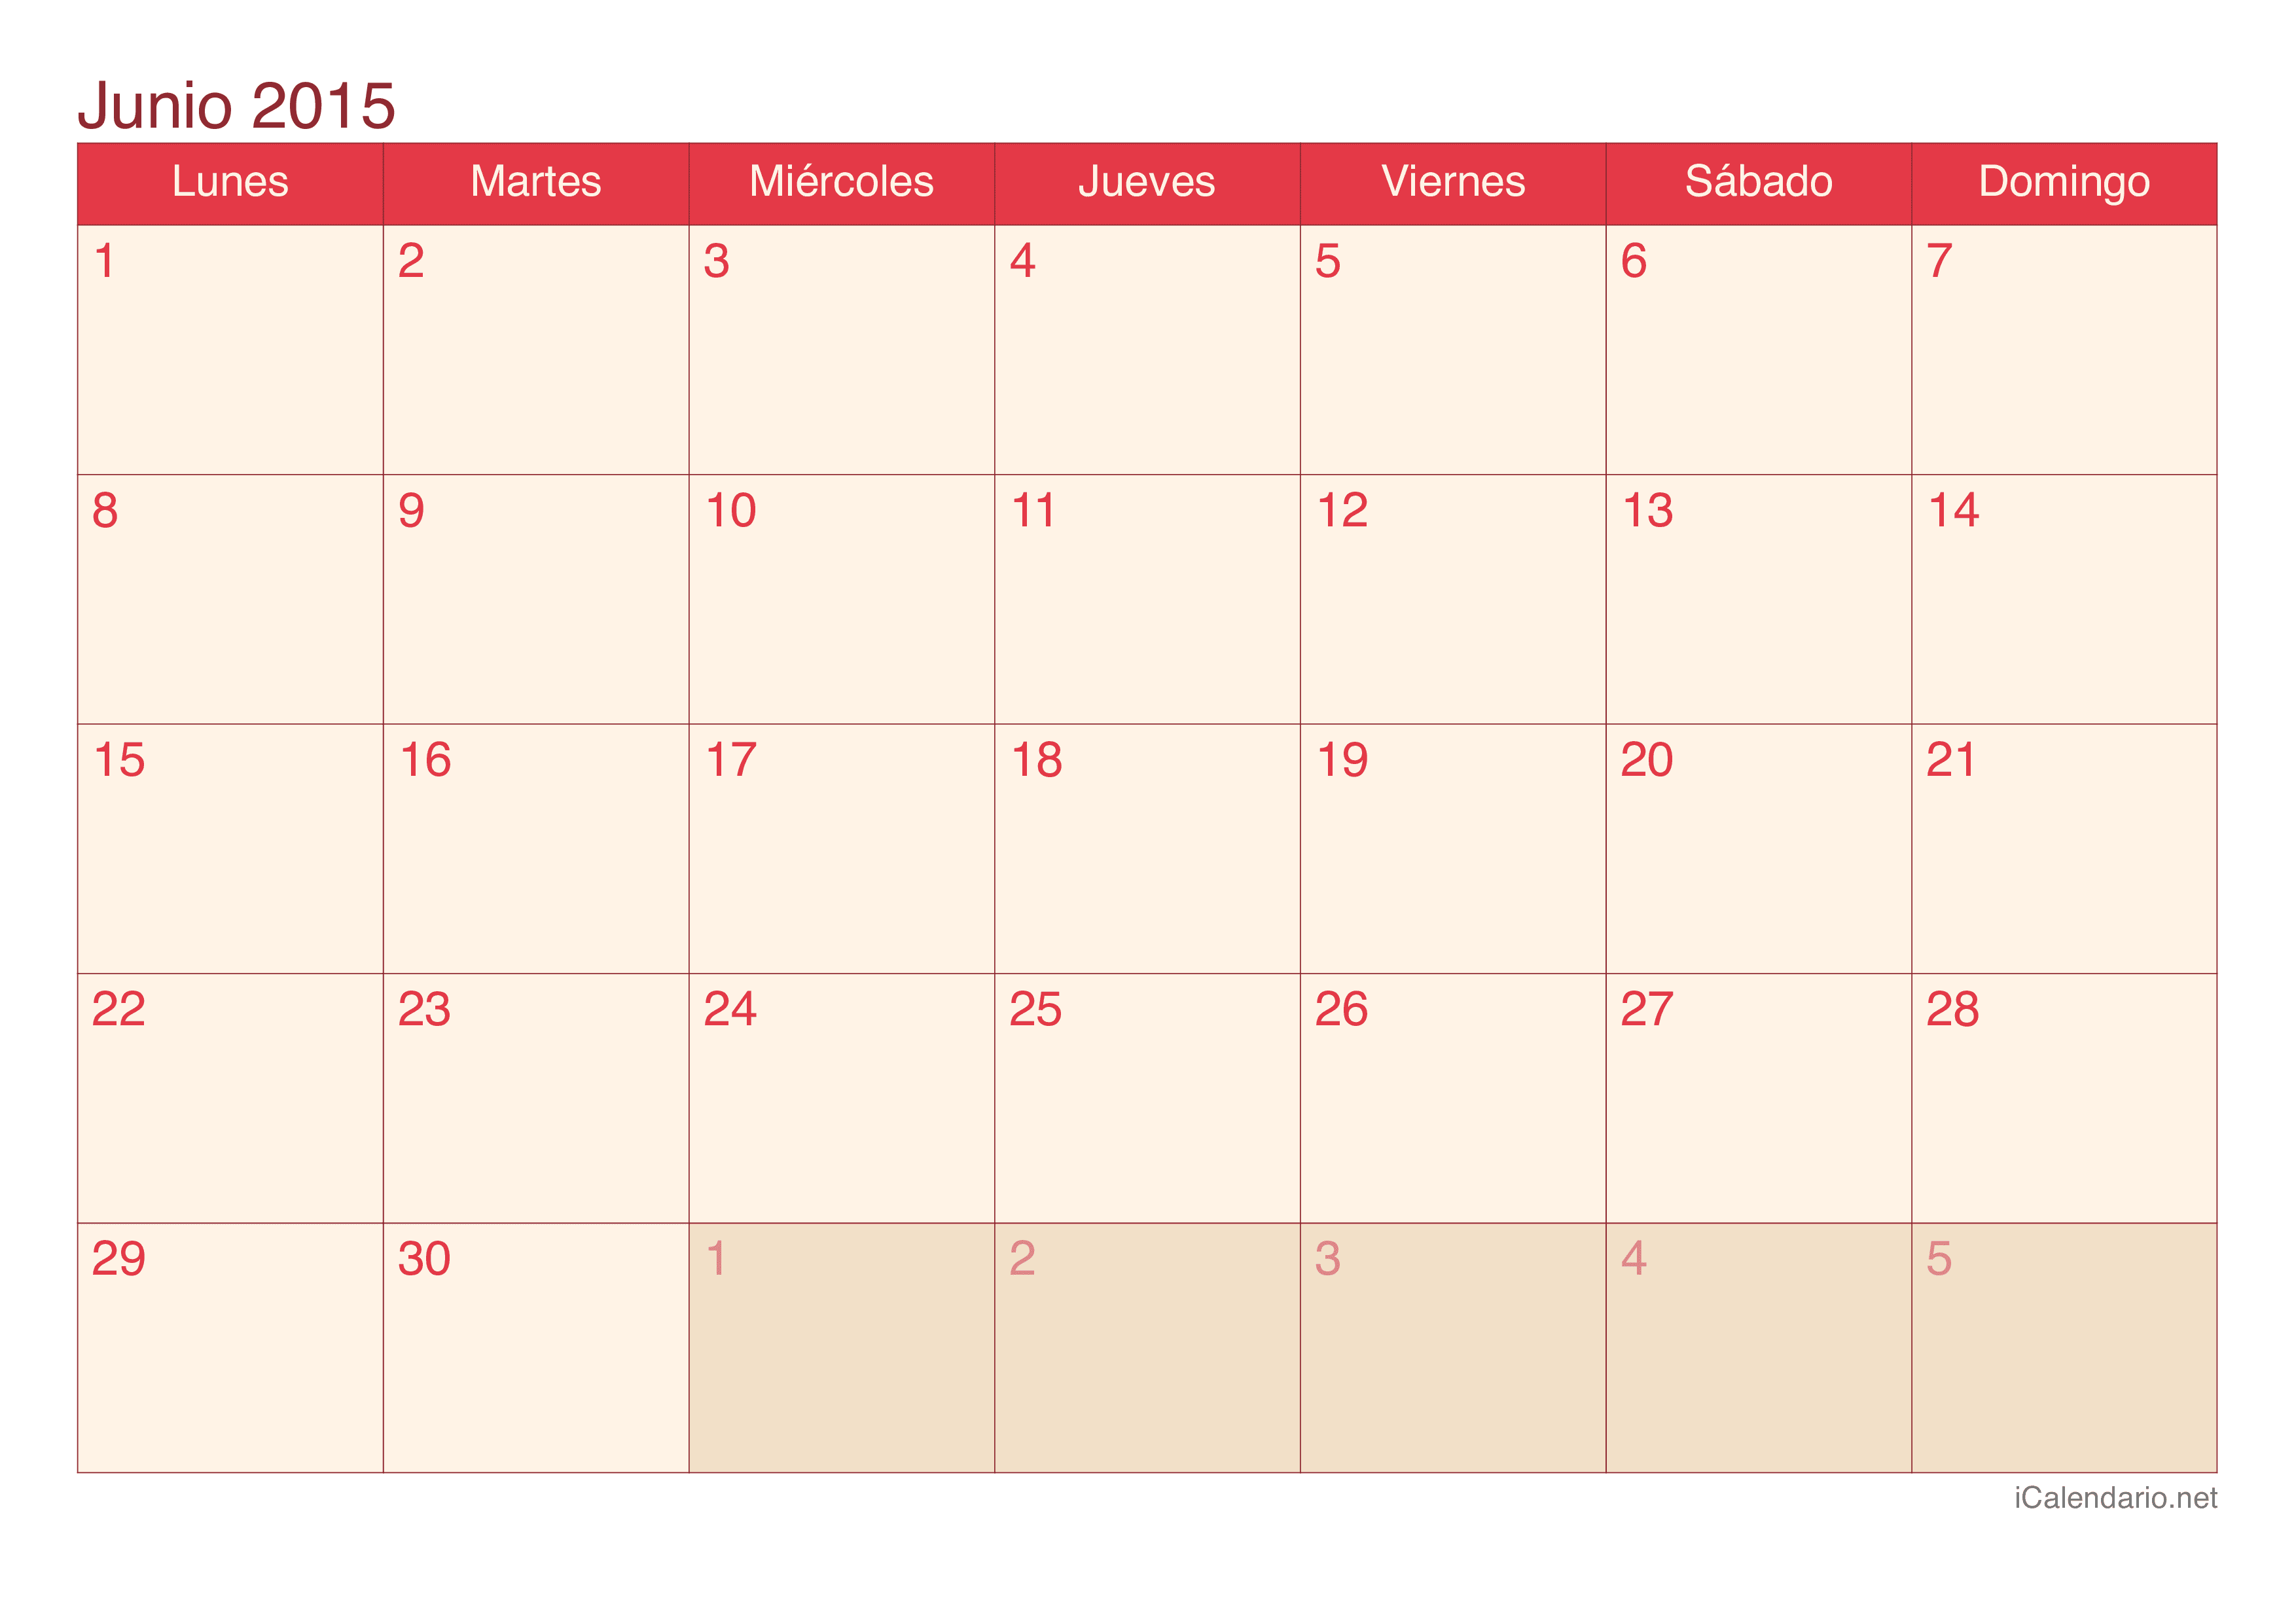 Calendario de junio 2015 - Cherry